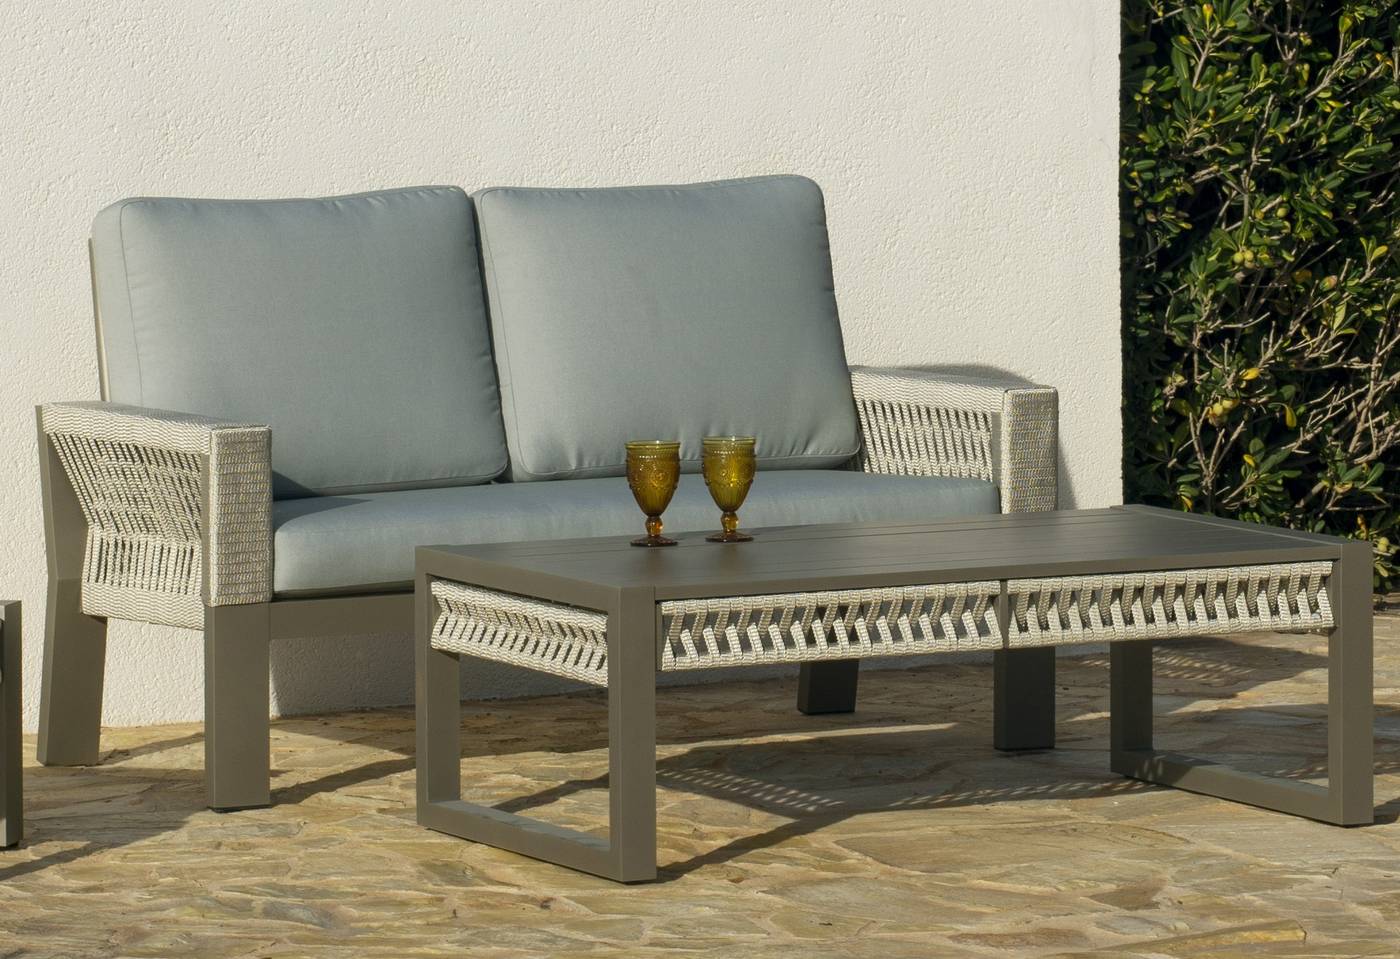 Set Aluminio Estambul-7 - Conjunto aluminio-cuerda: 1 sofá de 2 plazas + 2 sillones + 1 mesa de centro + cojines. Disponible en color blanco, gris, marrón o champagne.